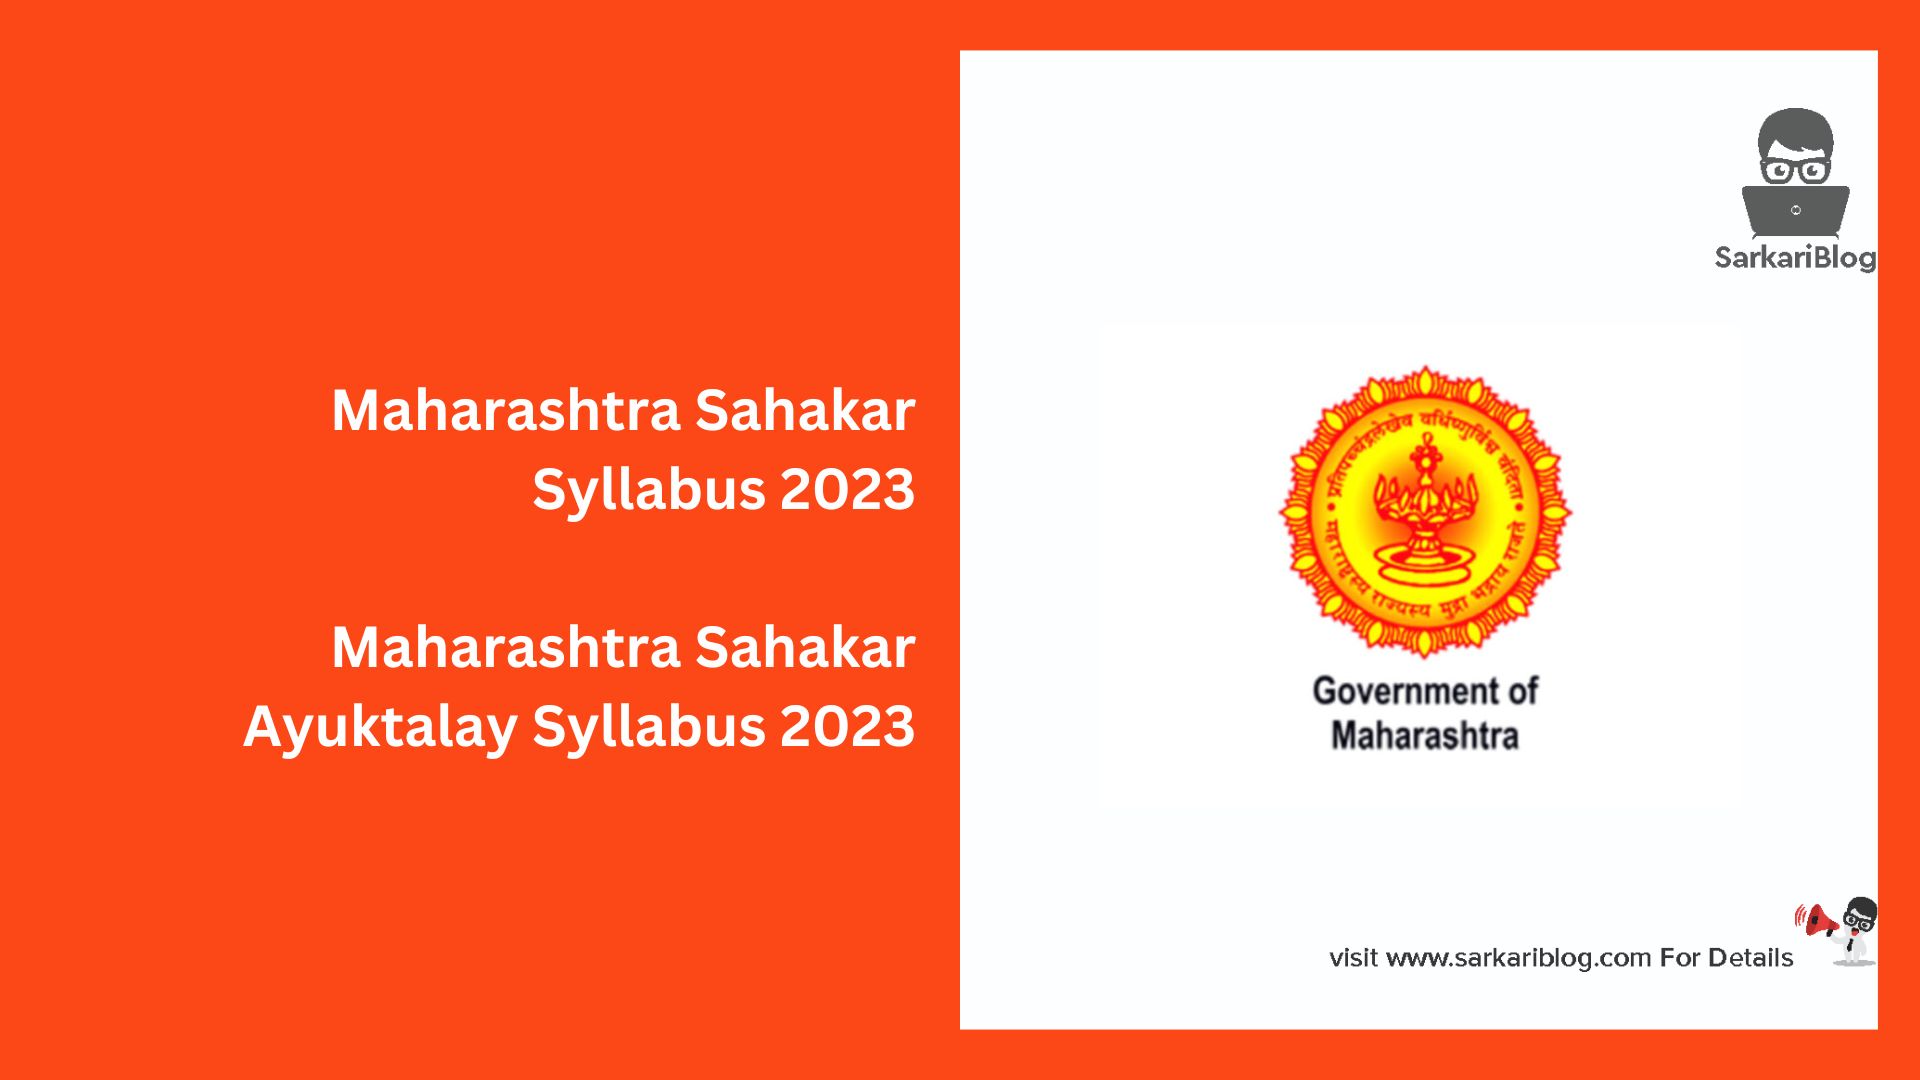 Maharashtra Sahakar Syllabus 2023